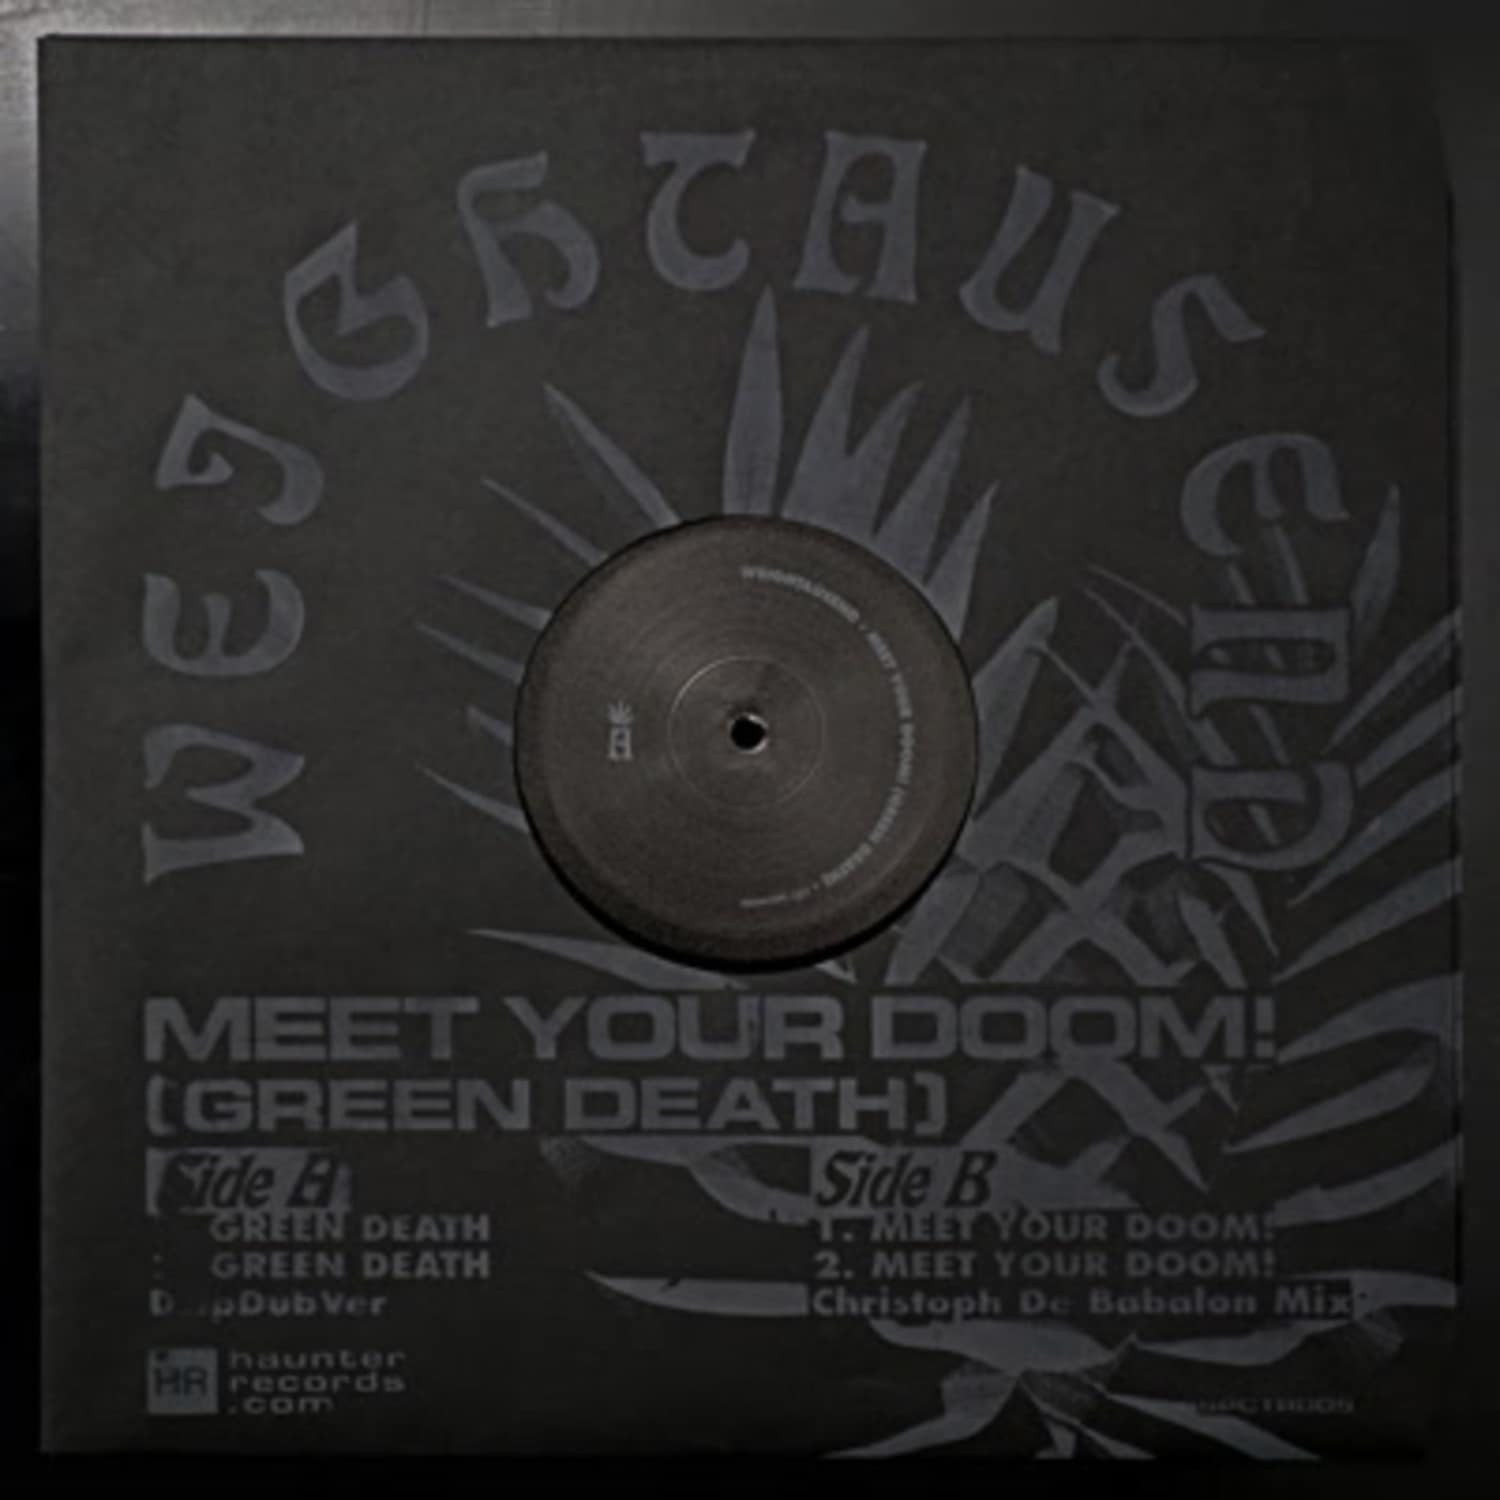 Weightausend - MEET YOUR DOOM! / GREEN DEATH